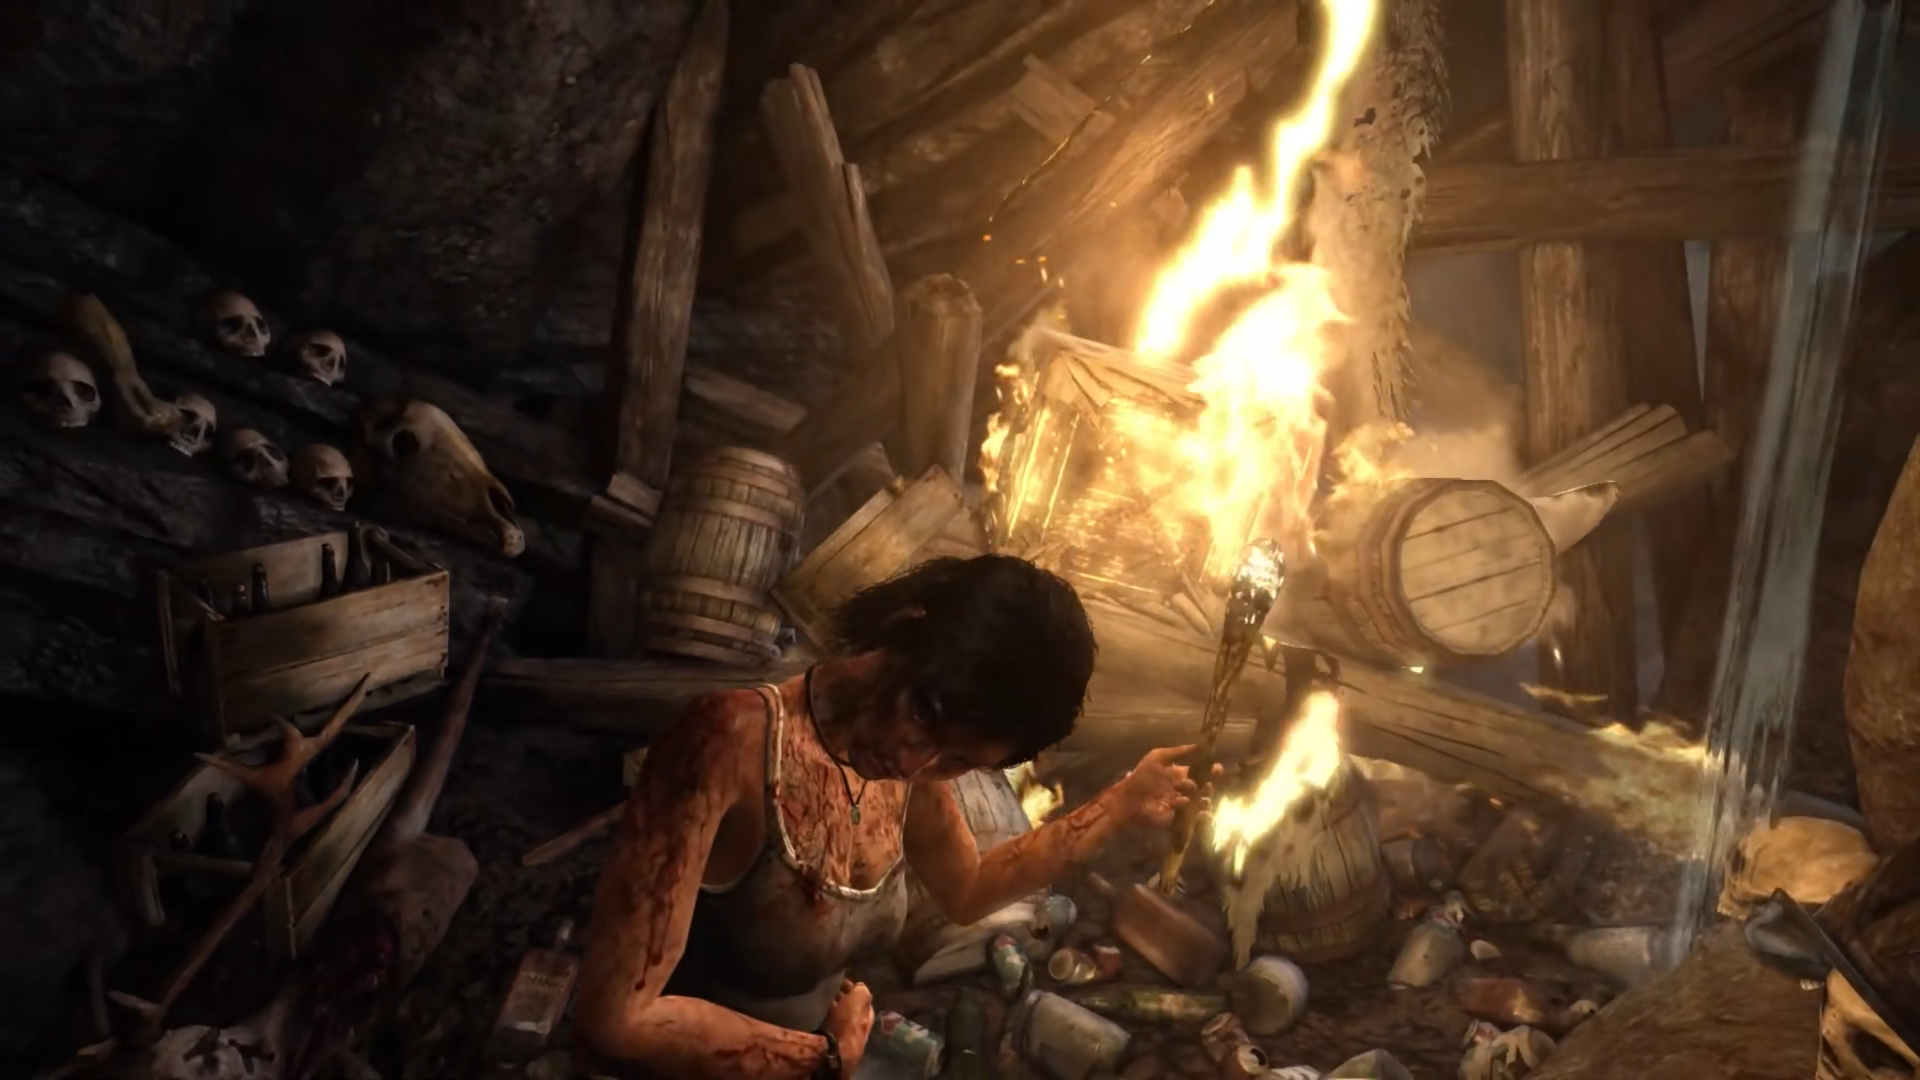 Lara burning some stuff